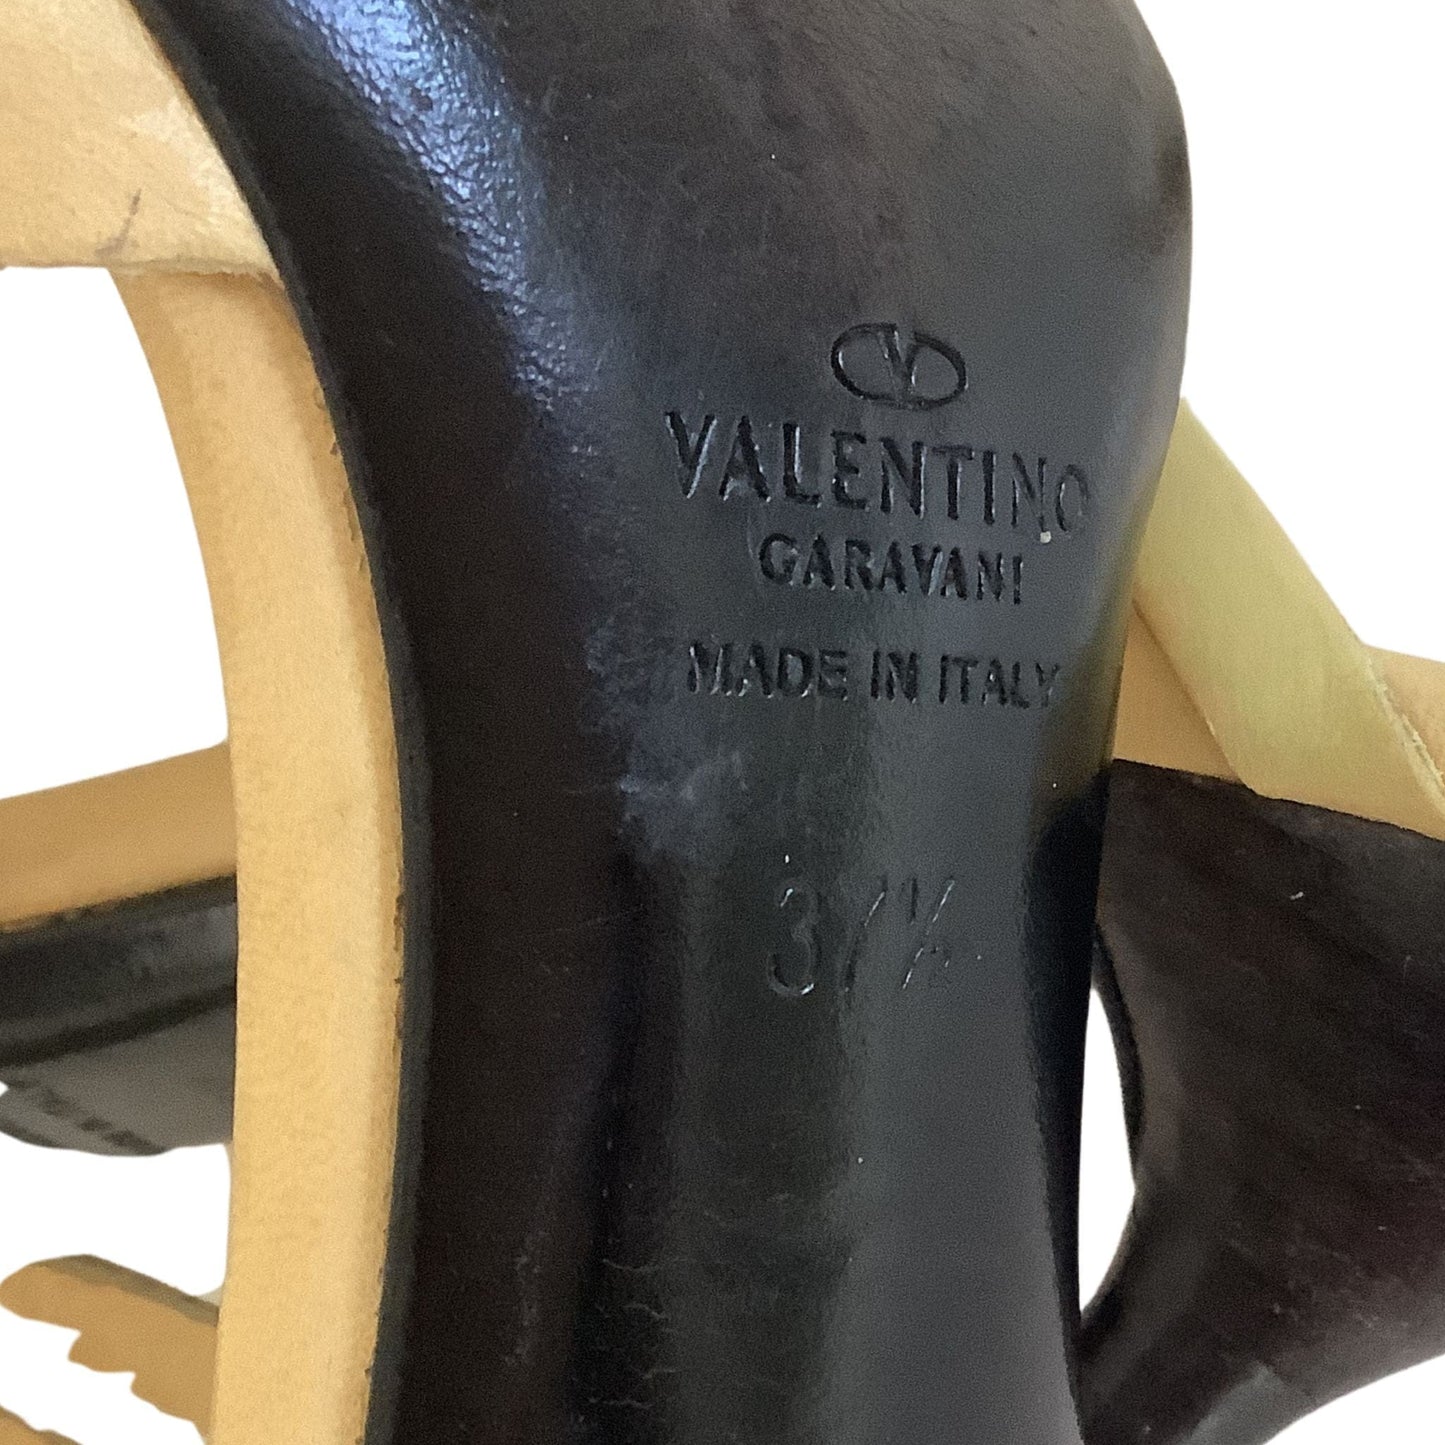 Valentino Garavani Heels 7 / Tan / Vintage 1990s